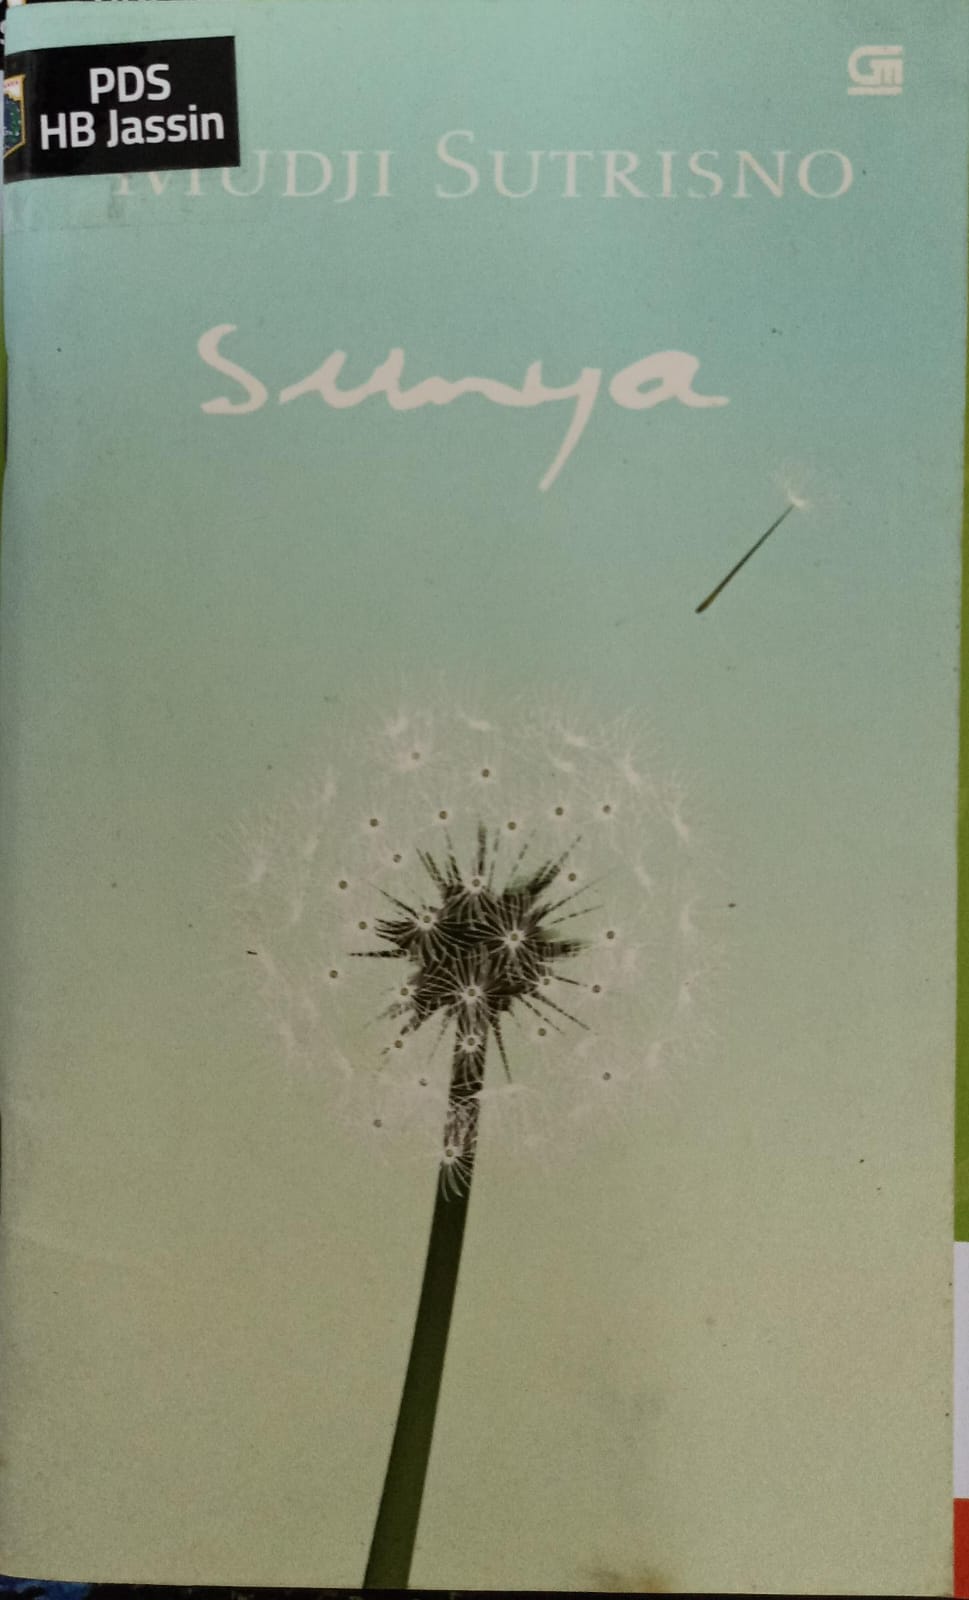 Sunya